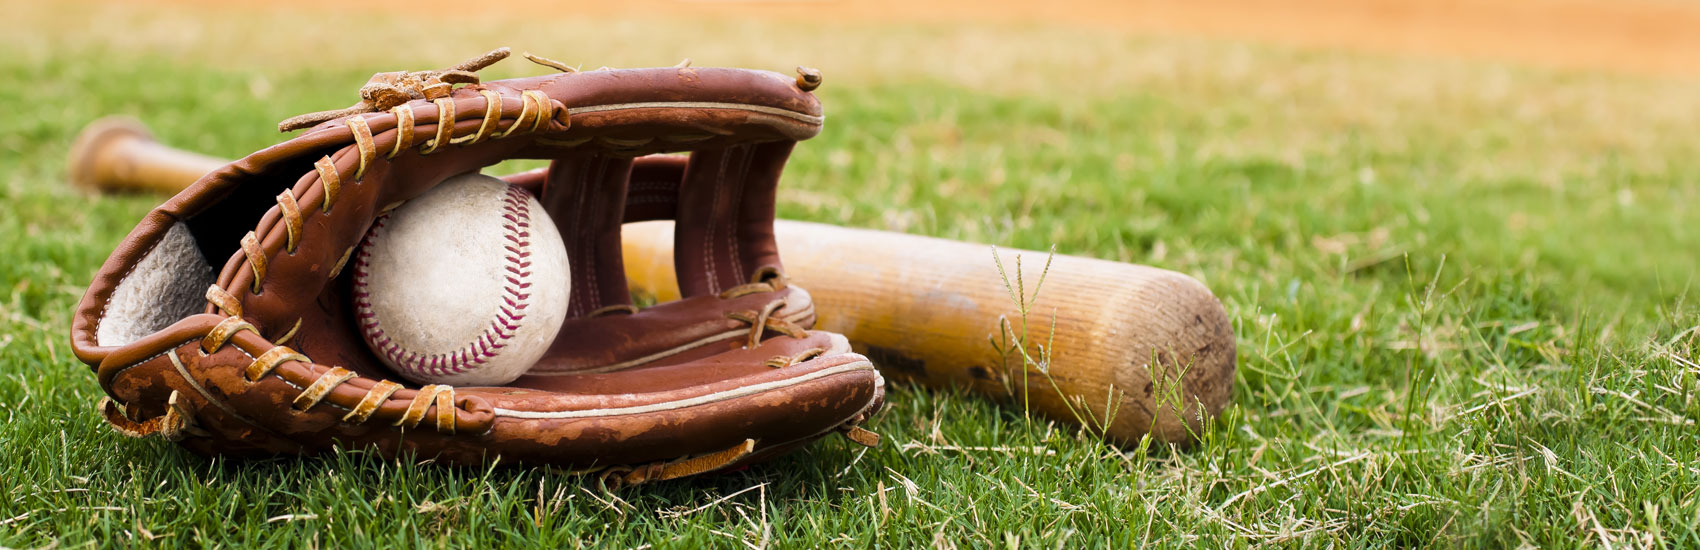 Expérience enrichissante aux Championnats provinciaux de baseball pour des jeunes Campivallensiens